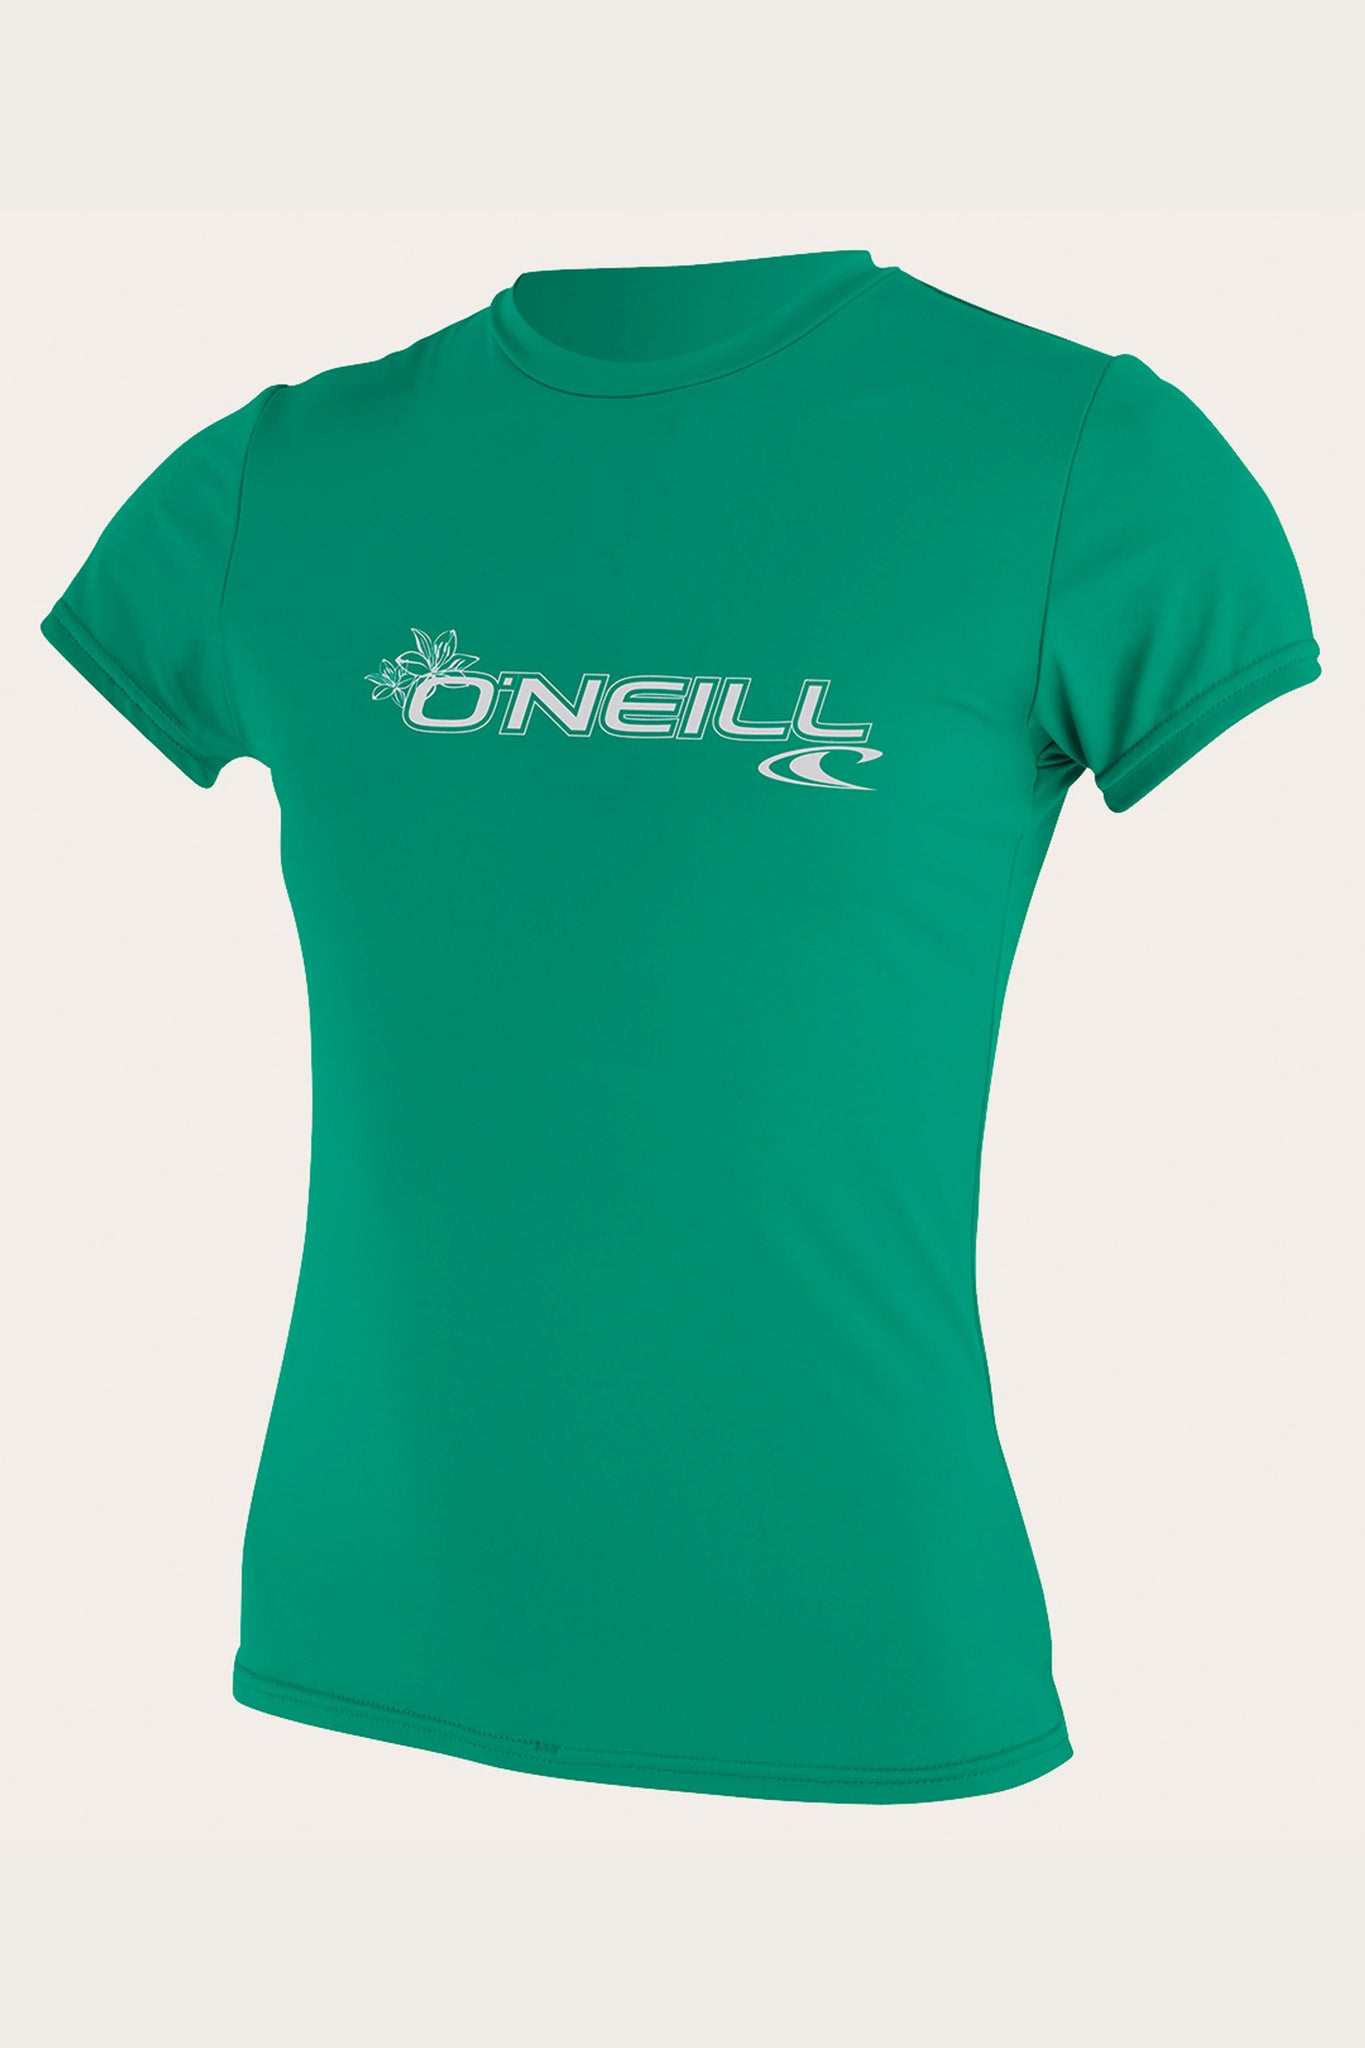 Women's Basic S/S Sun Shirt - Seaglass | O'Neill